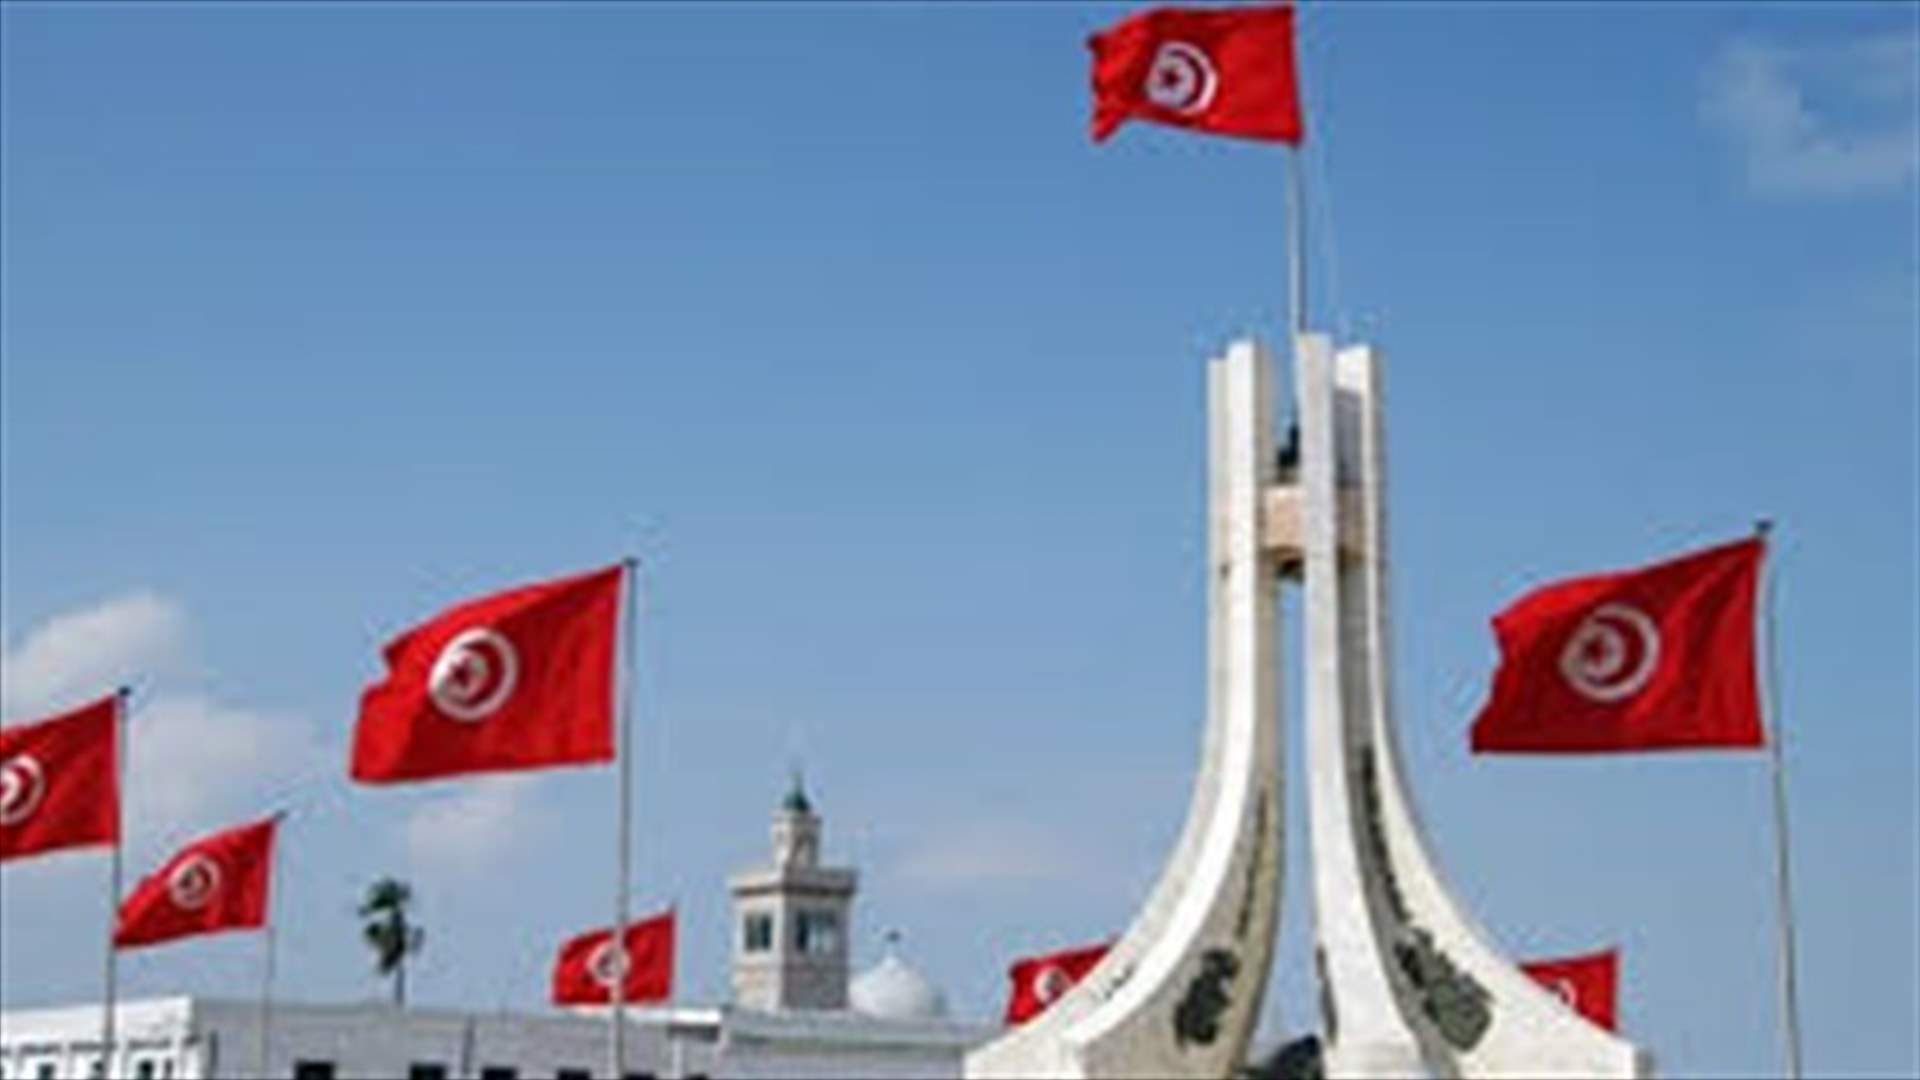 البرلمان التونسي يسحب الثقة من حكومة الحبيب الصيد